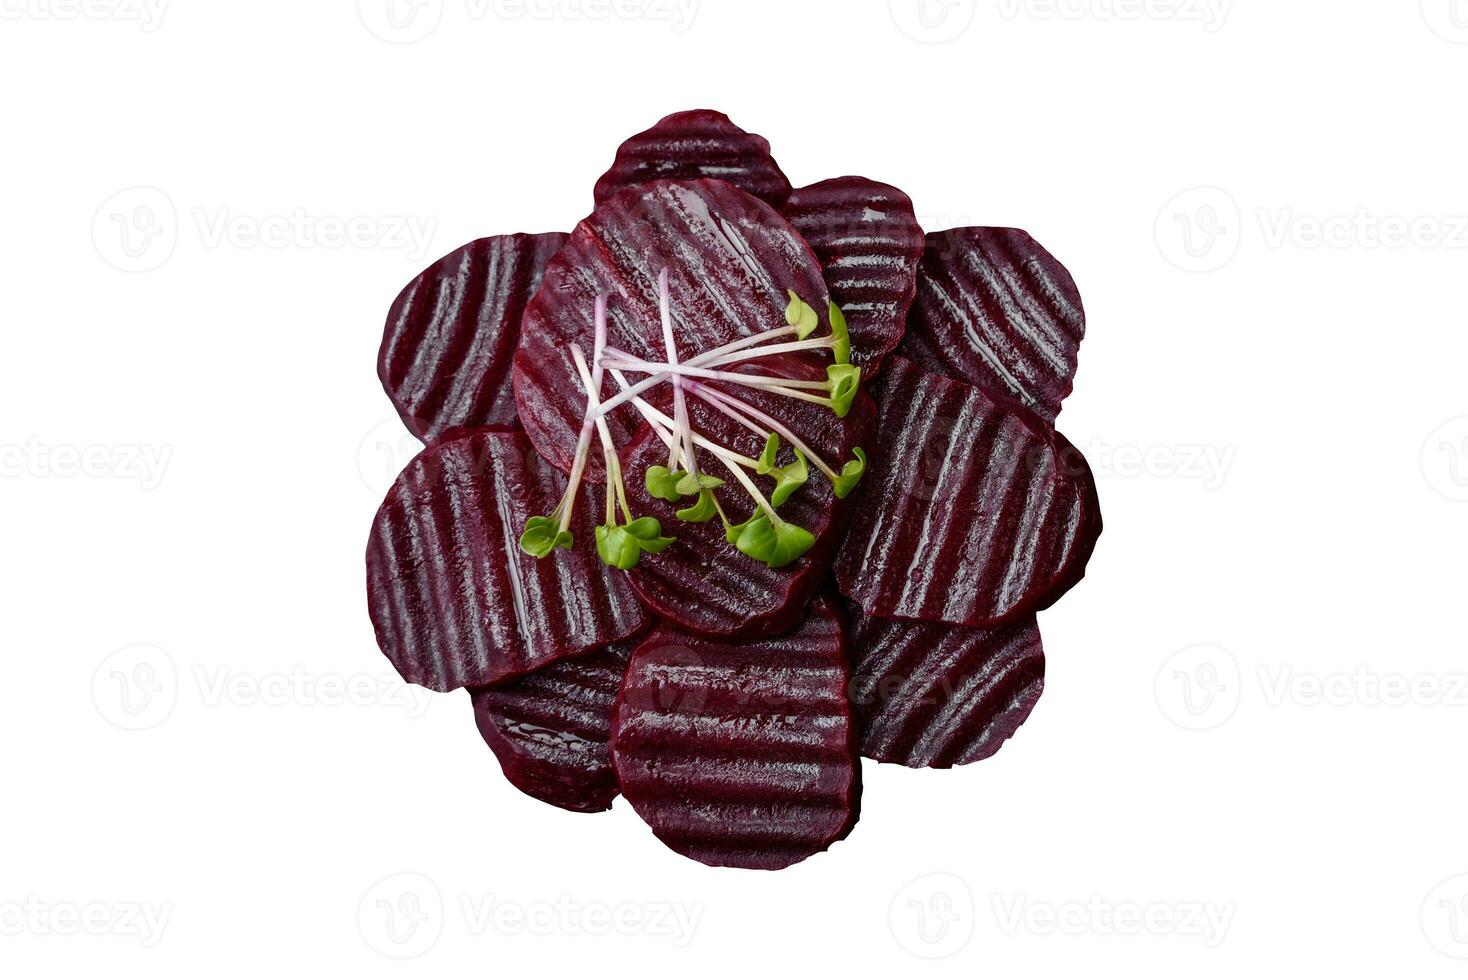 délicieux en bonne santé bouilli rubis coloré betteraves tranché sur une noir assiette photo